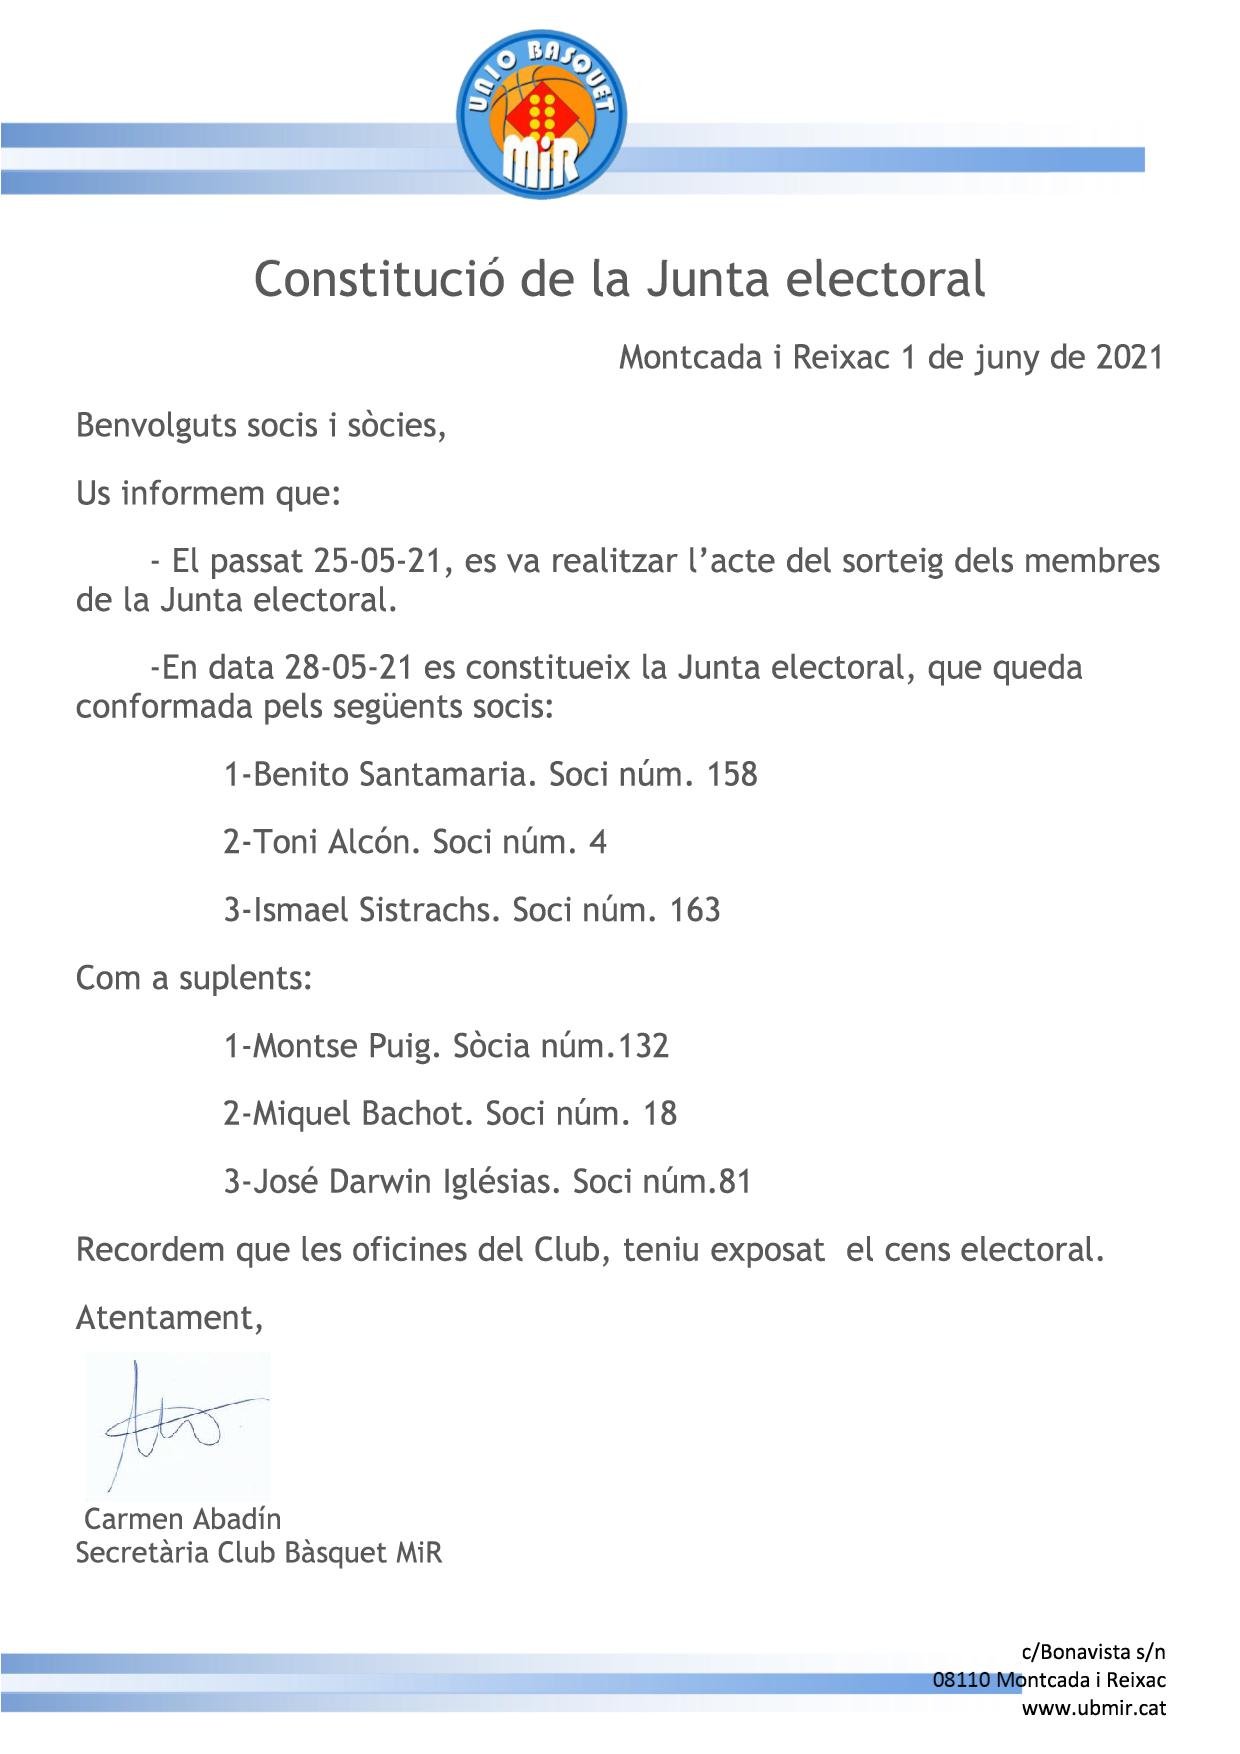 INFORMACIÓN COMPOSICIÓN DE LA JUNTA ELECTORAL